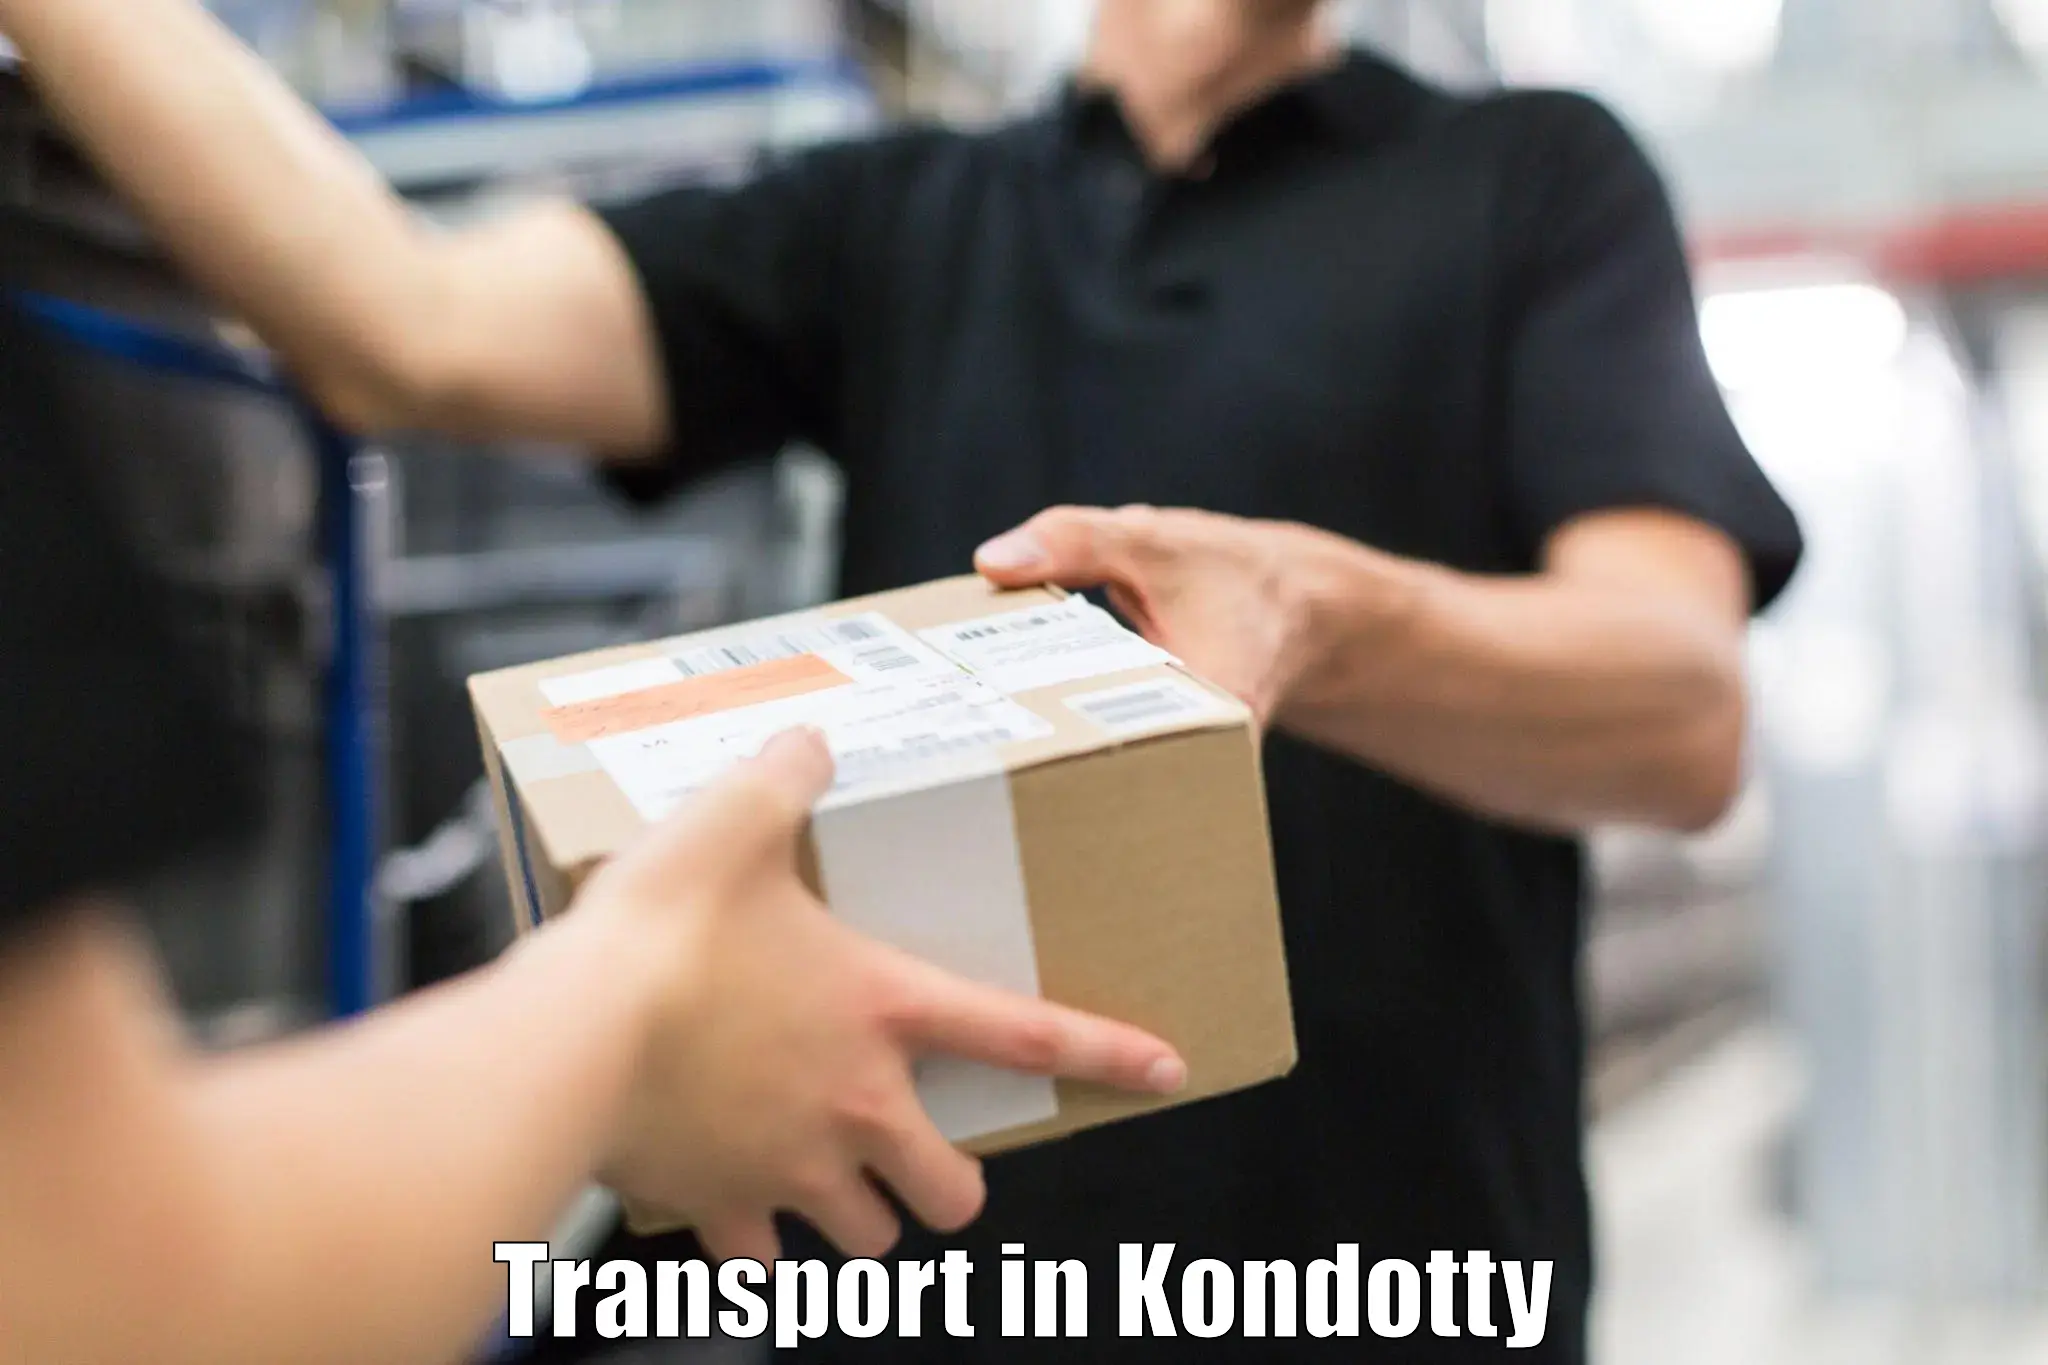 Online transport in Kondotty